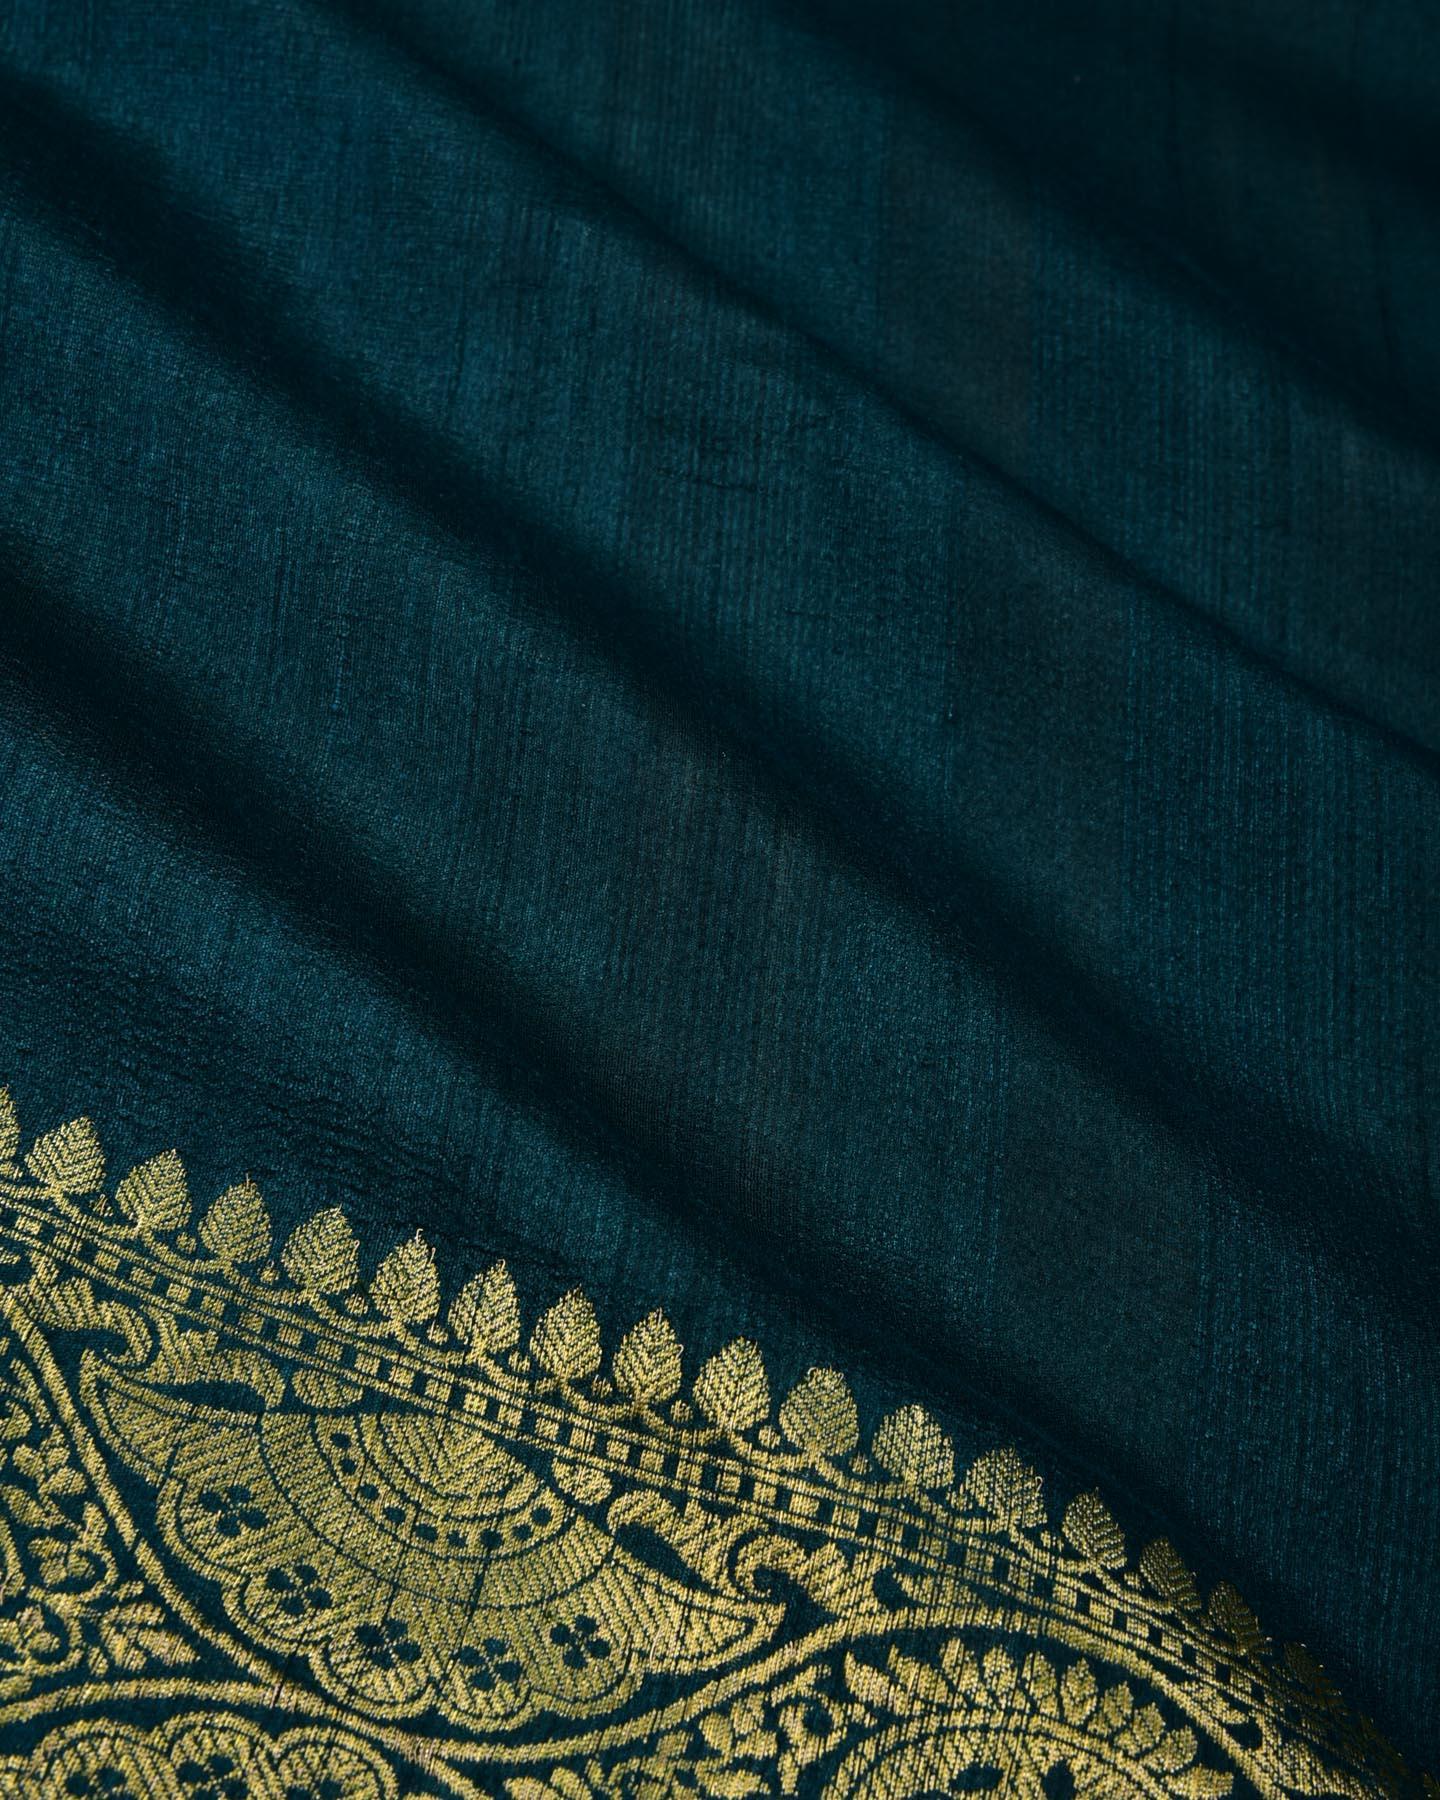 Teal Blue Banarasi Kadhuan Brocade Handwoven Tasar Silk Saree - By HolyWeaves, Benares